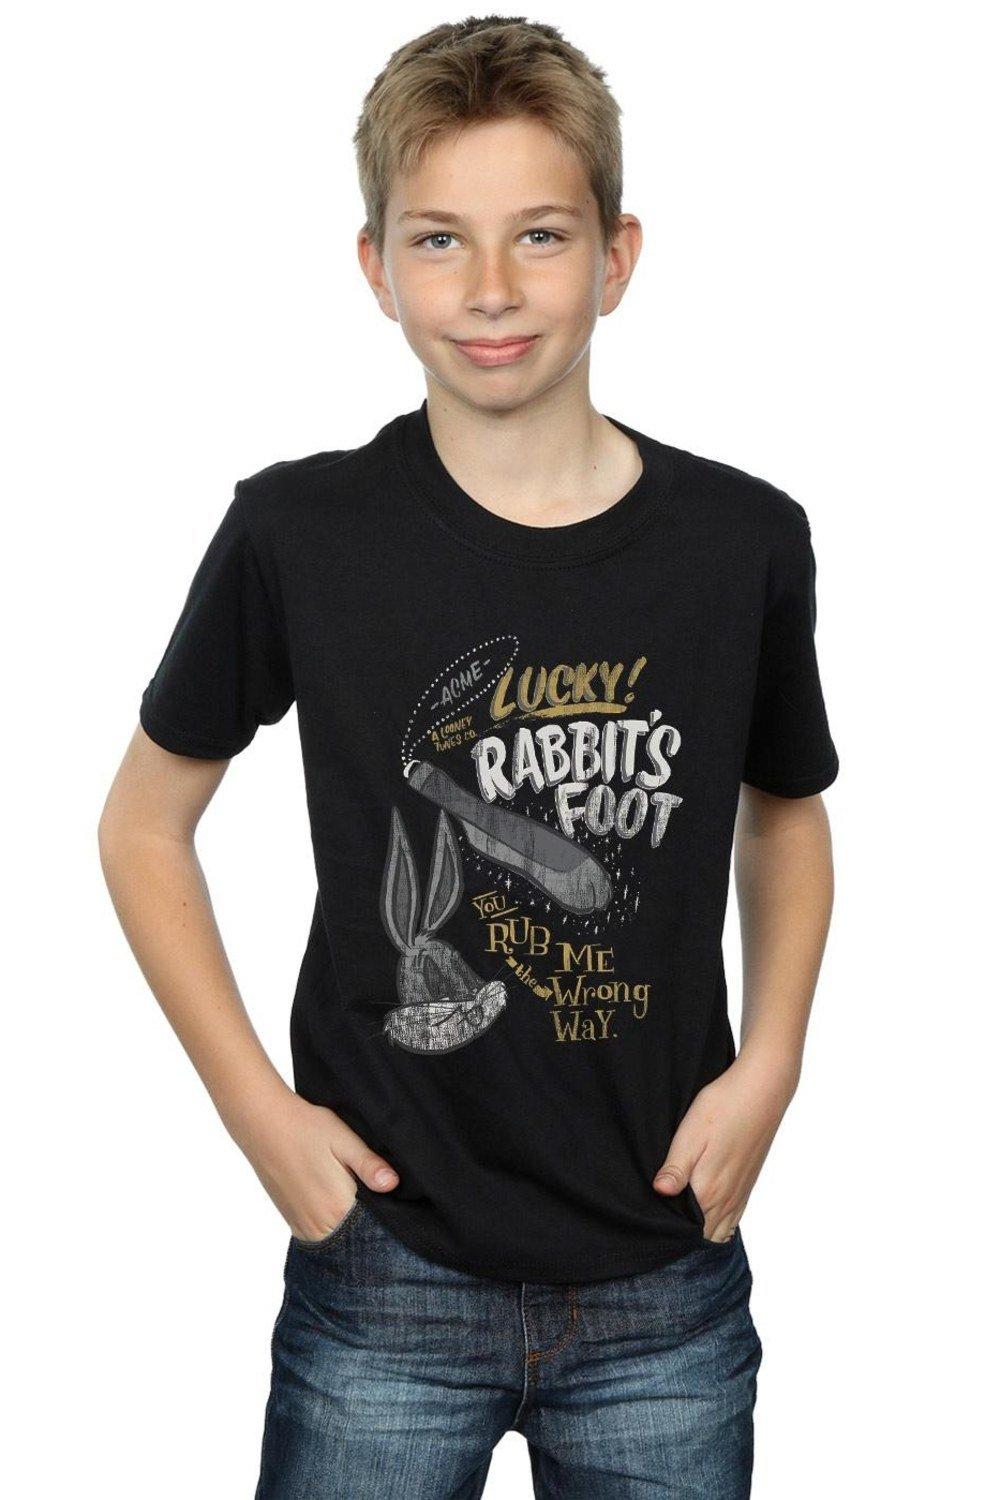 Bugs Bunny Rub Me The Wrong Way T-Shirt